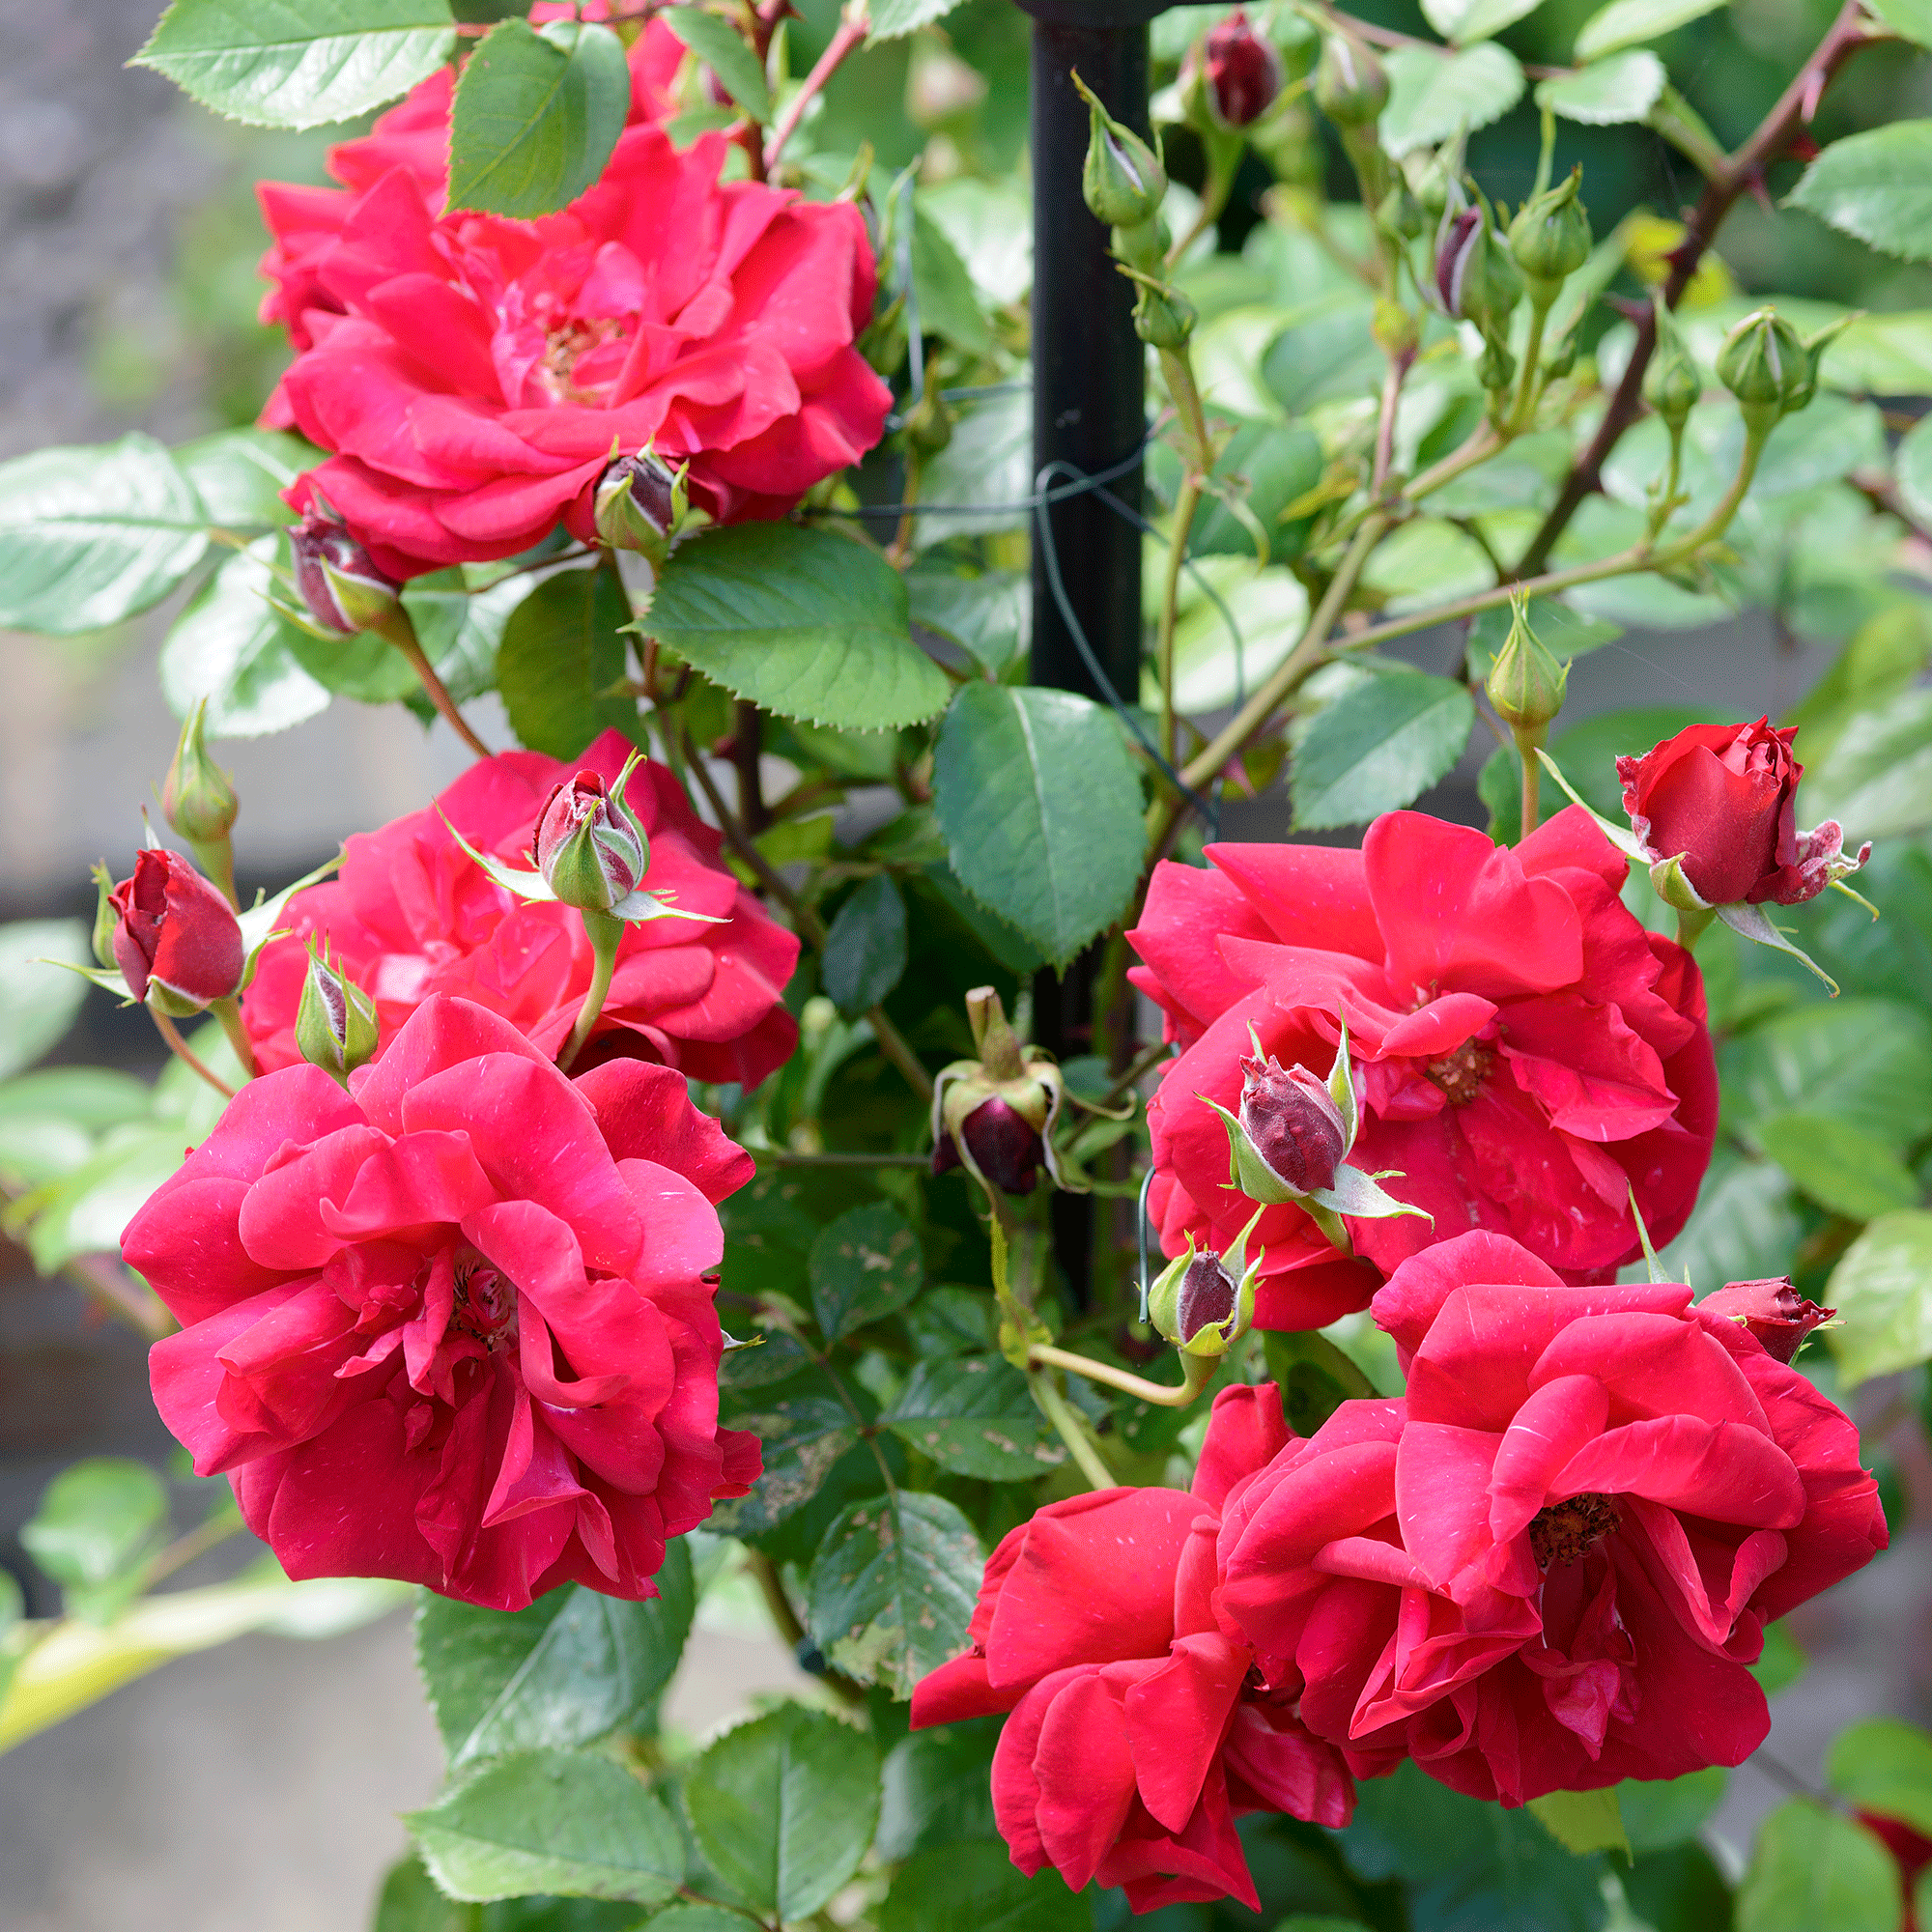 Roses in garden